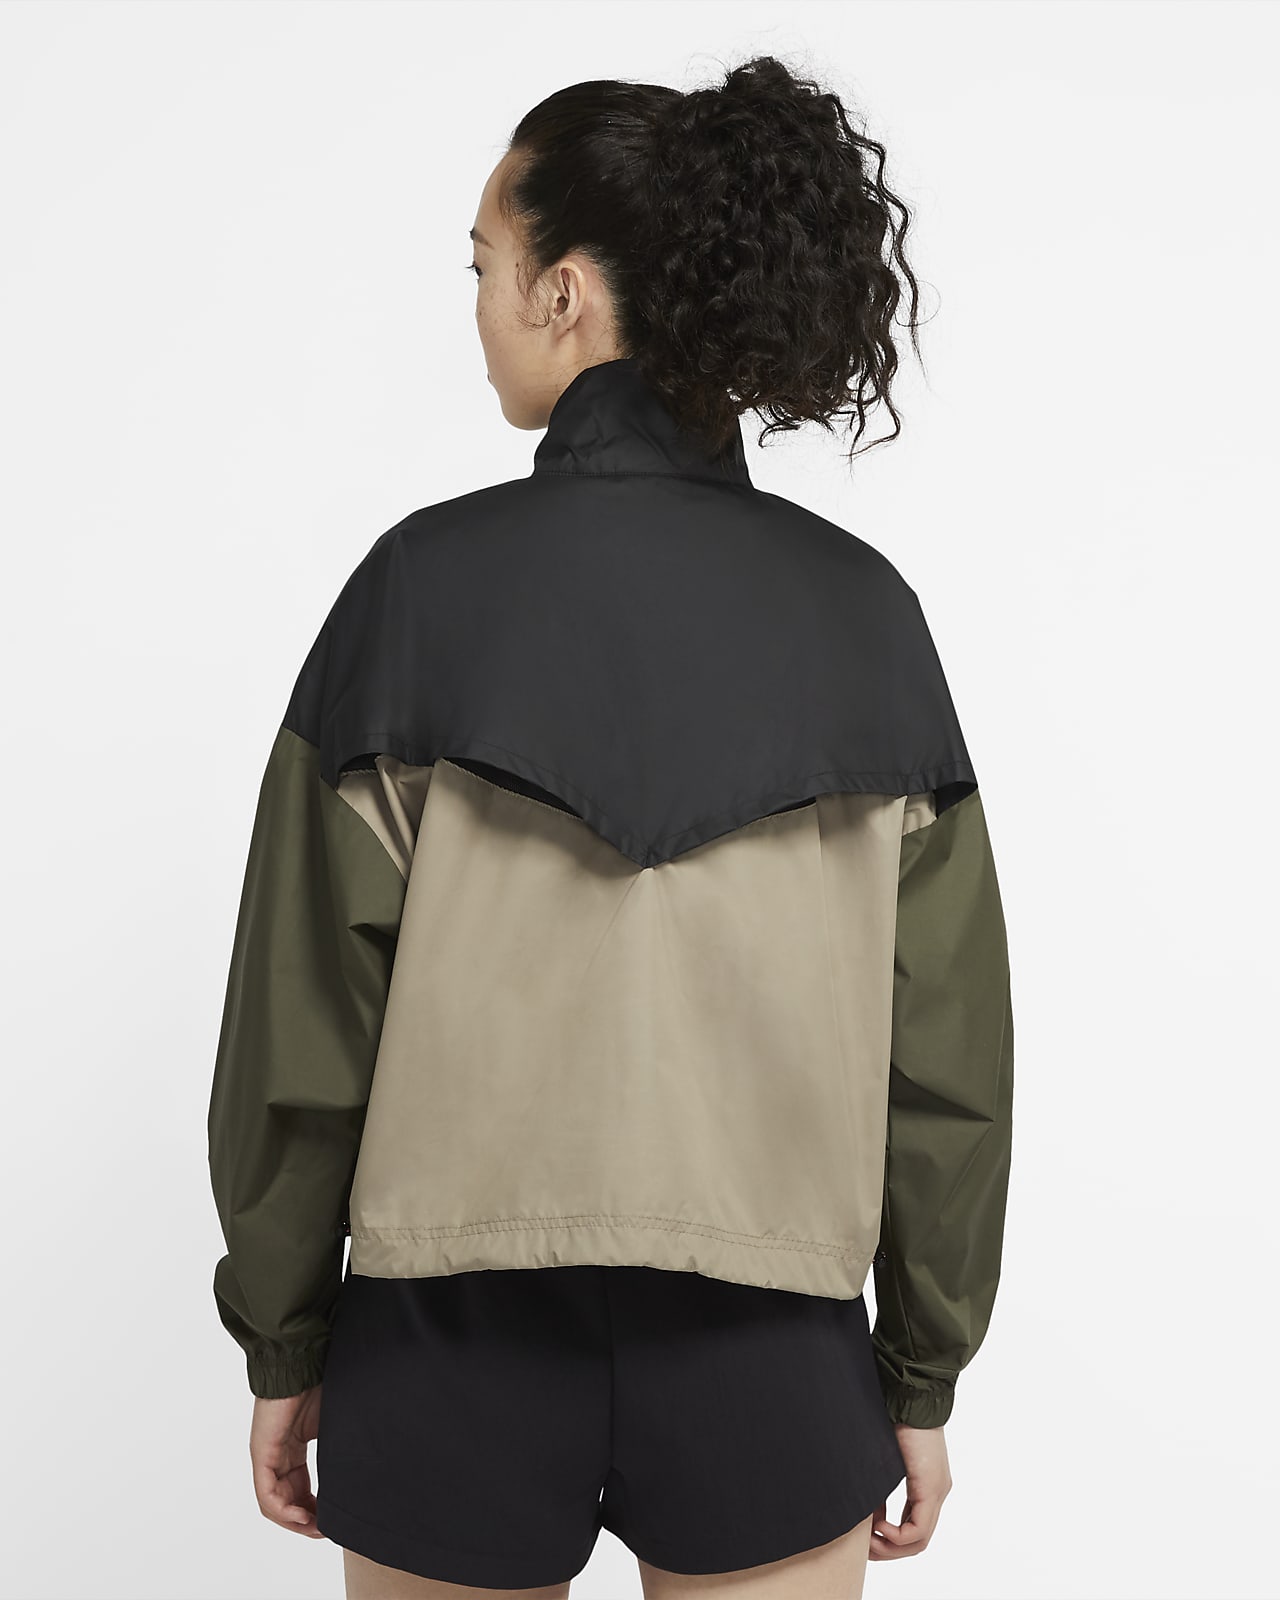 nike women's sportswear woven anorak jacket